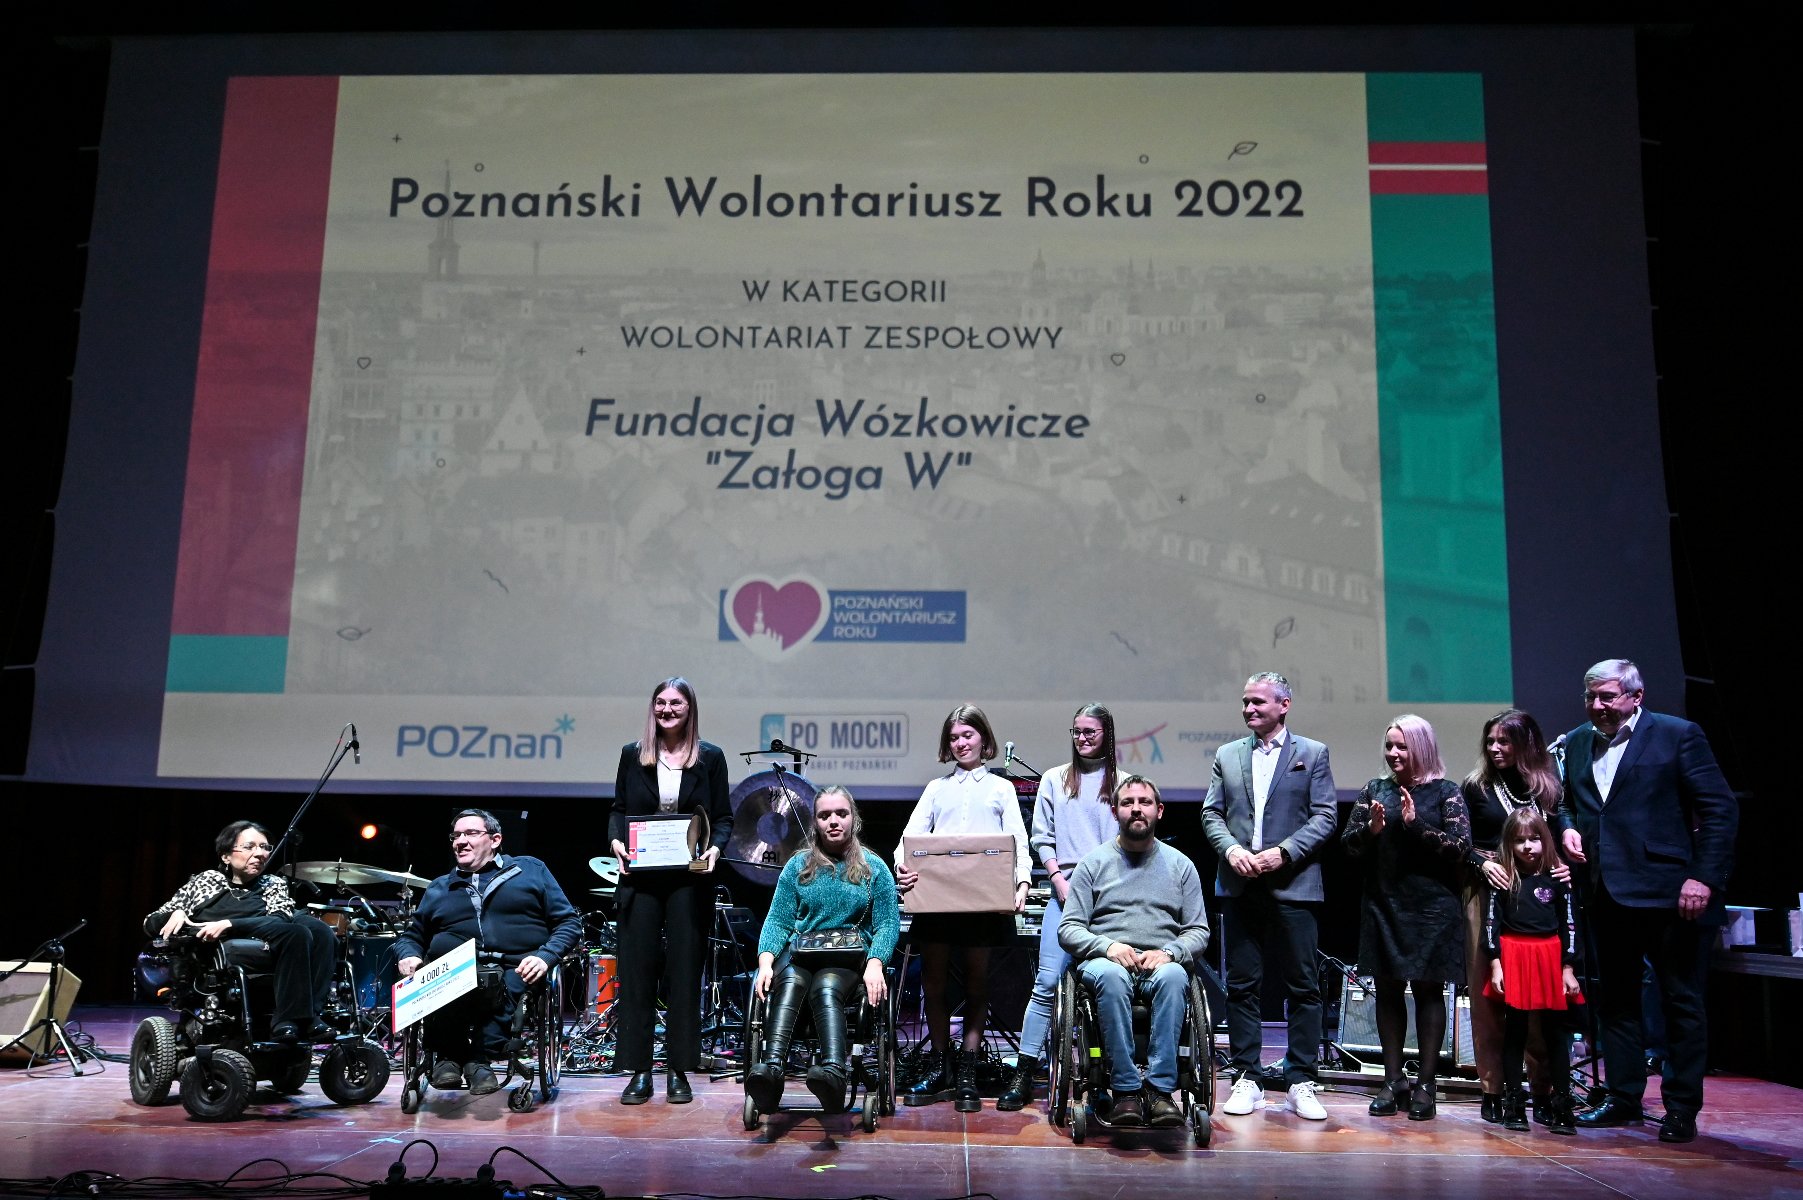 Galeria zdjęć przedstawia osoby stojące na scenie podczas wręczania nagród w ramach konkursu Poznański Wolontariusz Roku 2022. - grafika artykułu